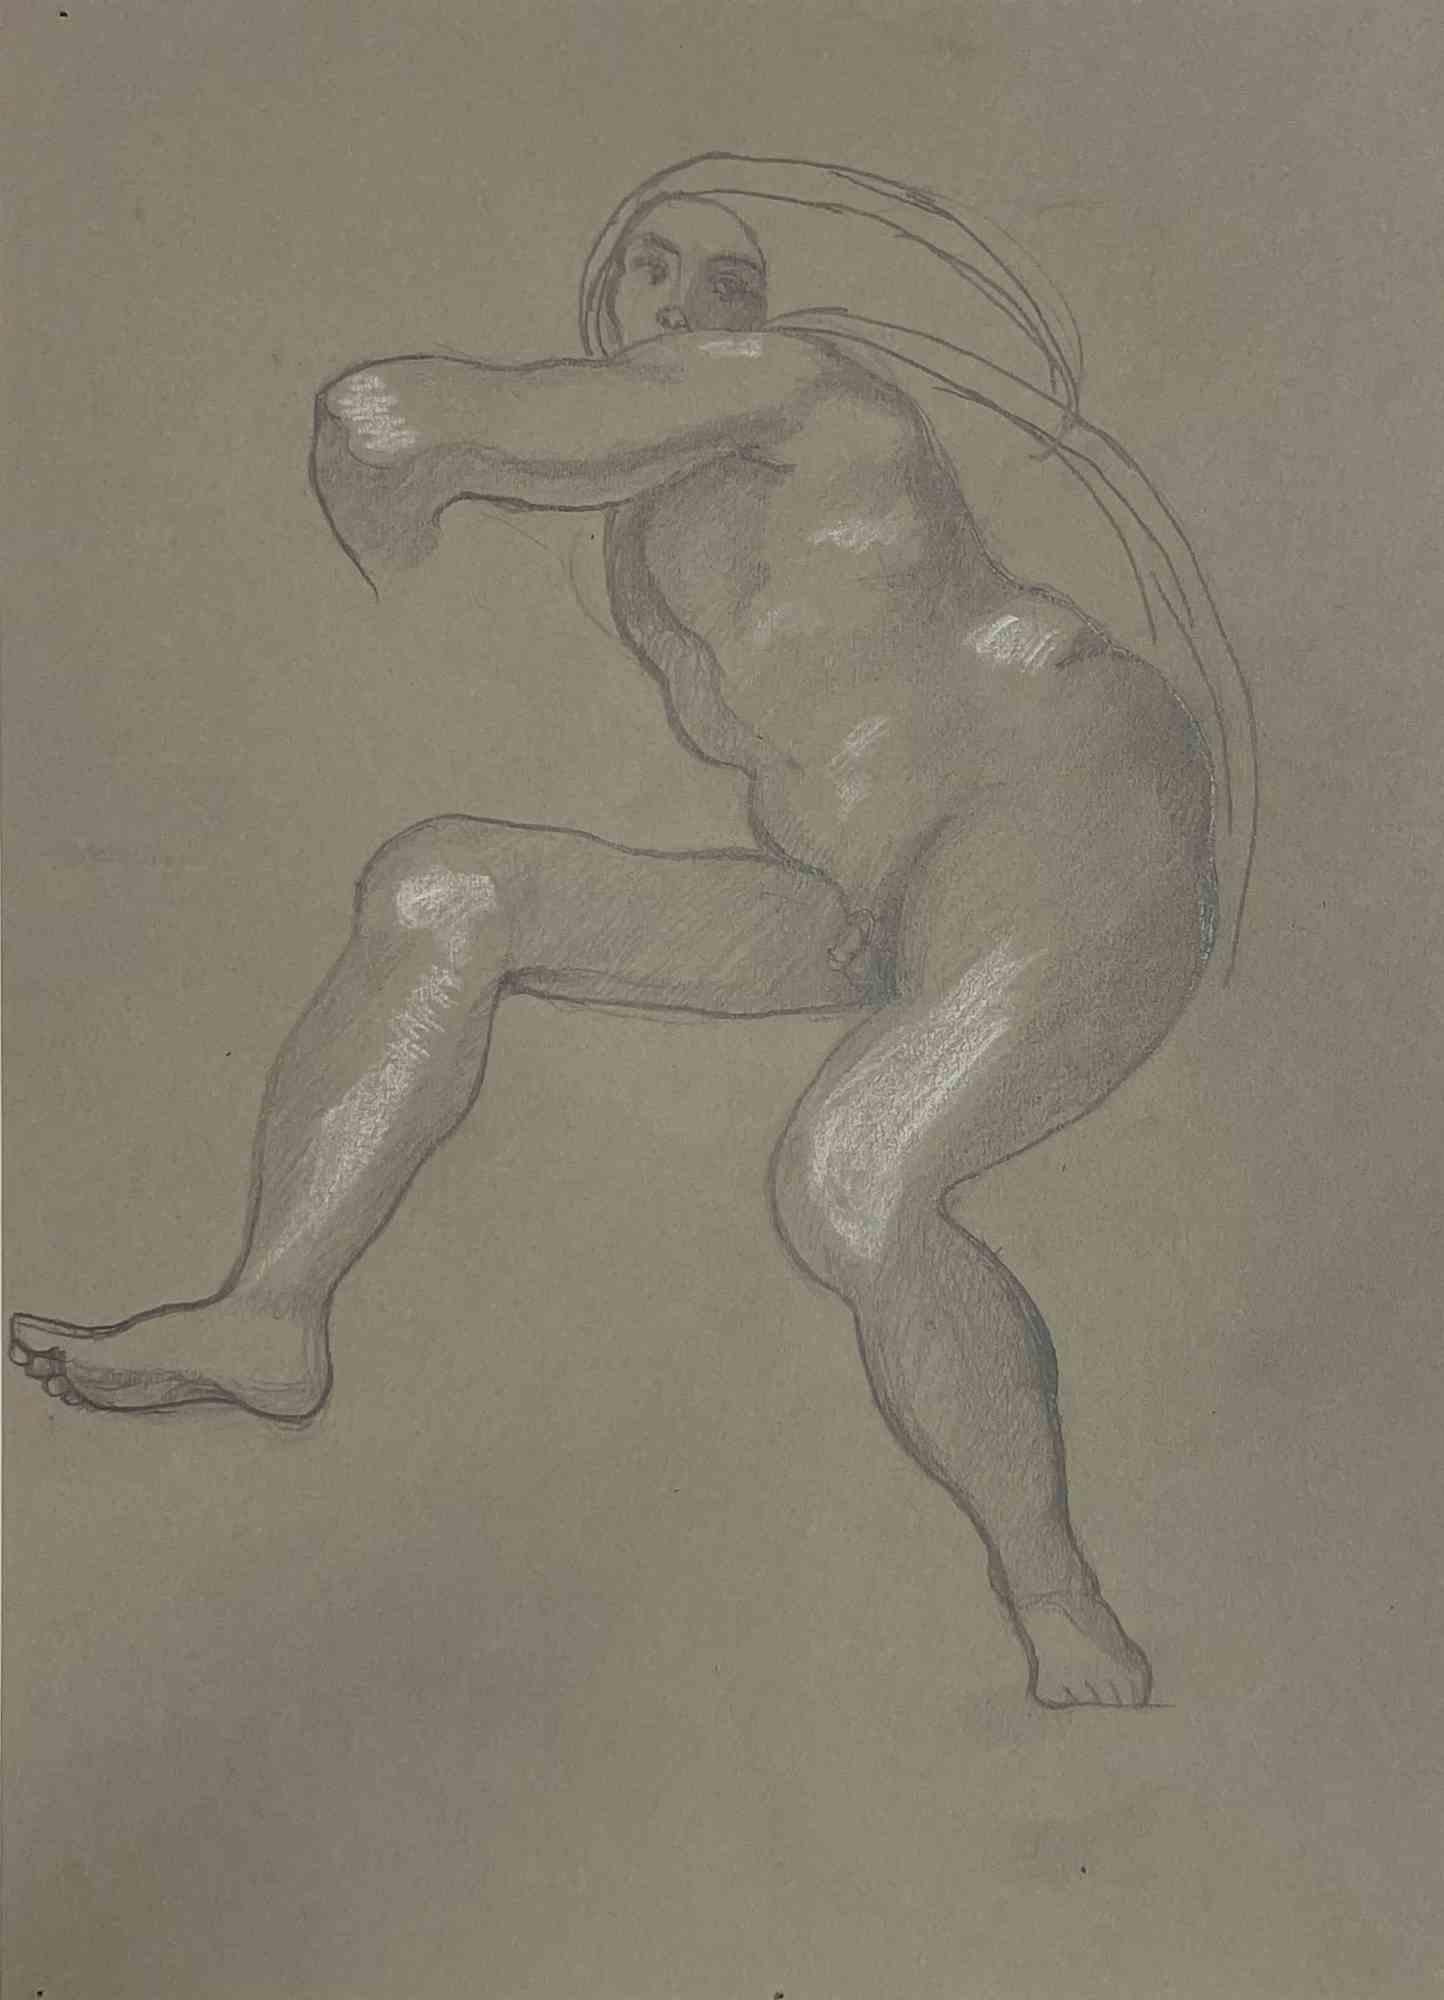 Nackt nach  Michelangelo ist ein Kunstwerk von Luigi Russolo aus den Jahren 1933/34.

Gemischte Medien auf Papier.

Gute Bedingungen.

Luigi Carlo Filippo Russolo (Portogruaro, 30. April 1885 - Laveno-Mombello, 4. Februar 1947) war ein italienischer